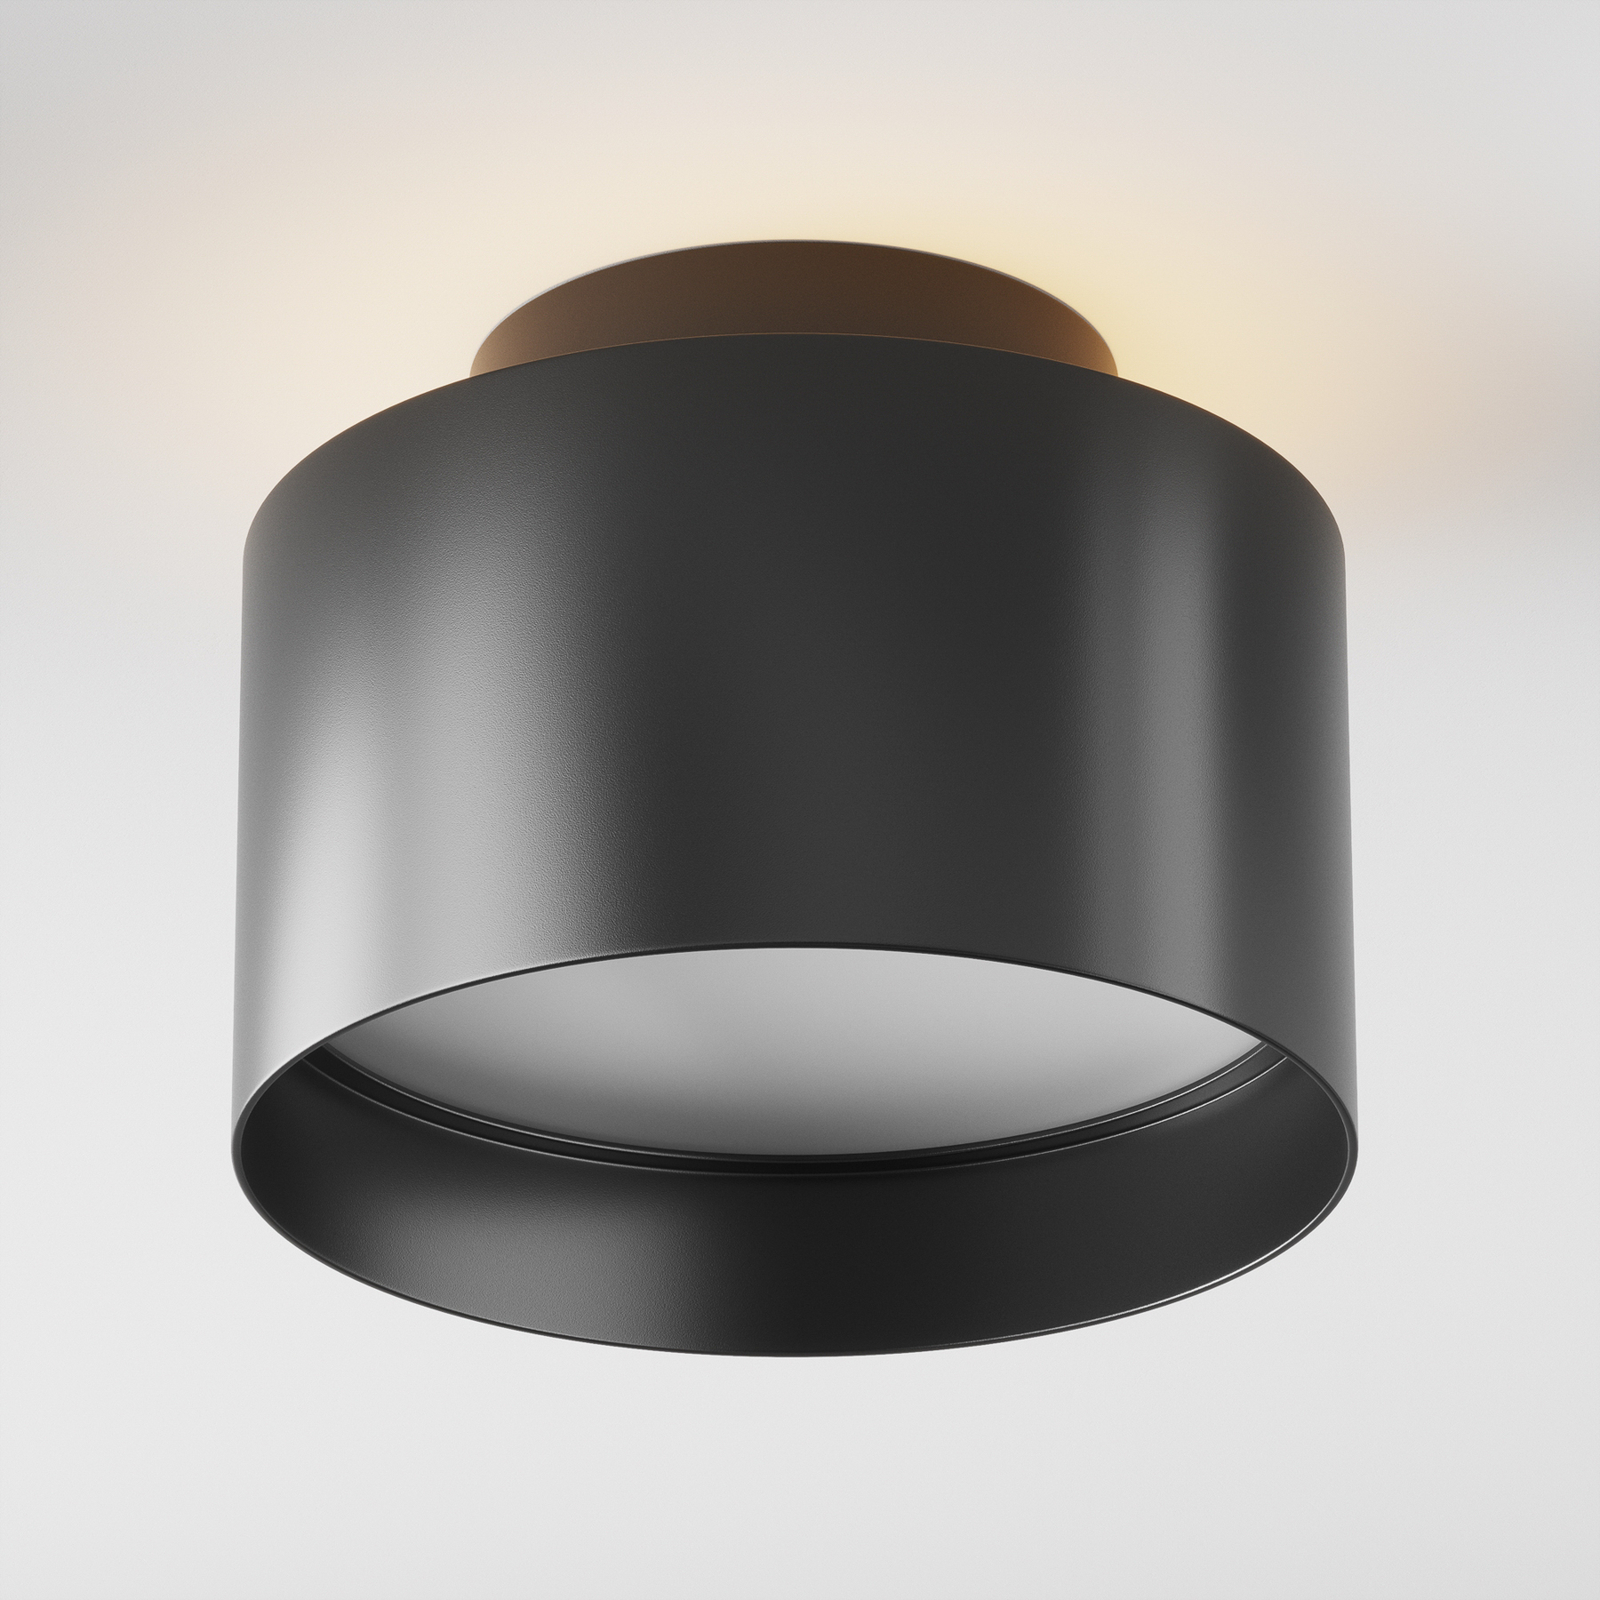 Maytoni Planet LED ceiling light, Ø 12 cm, black